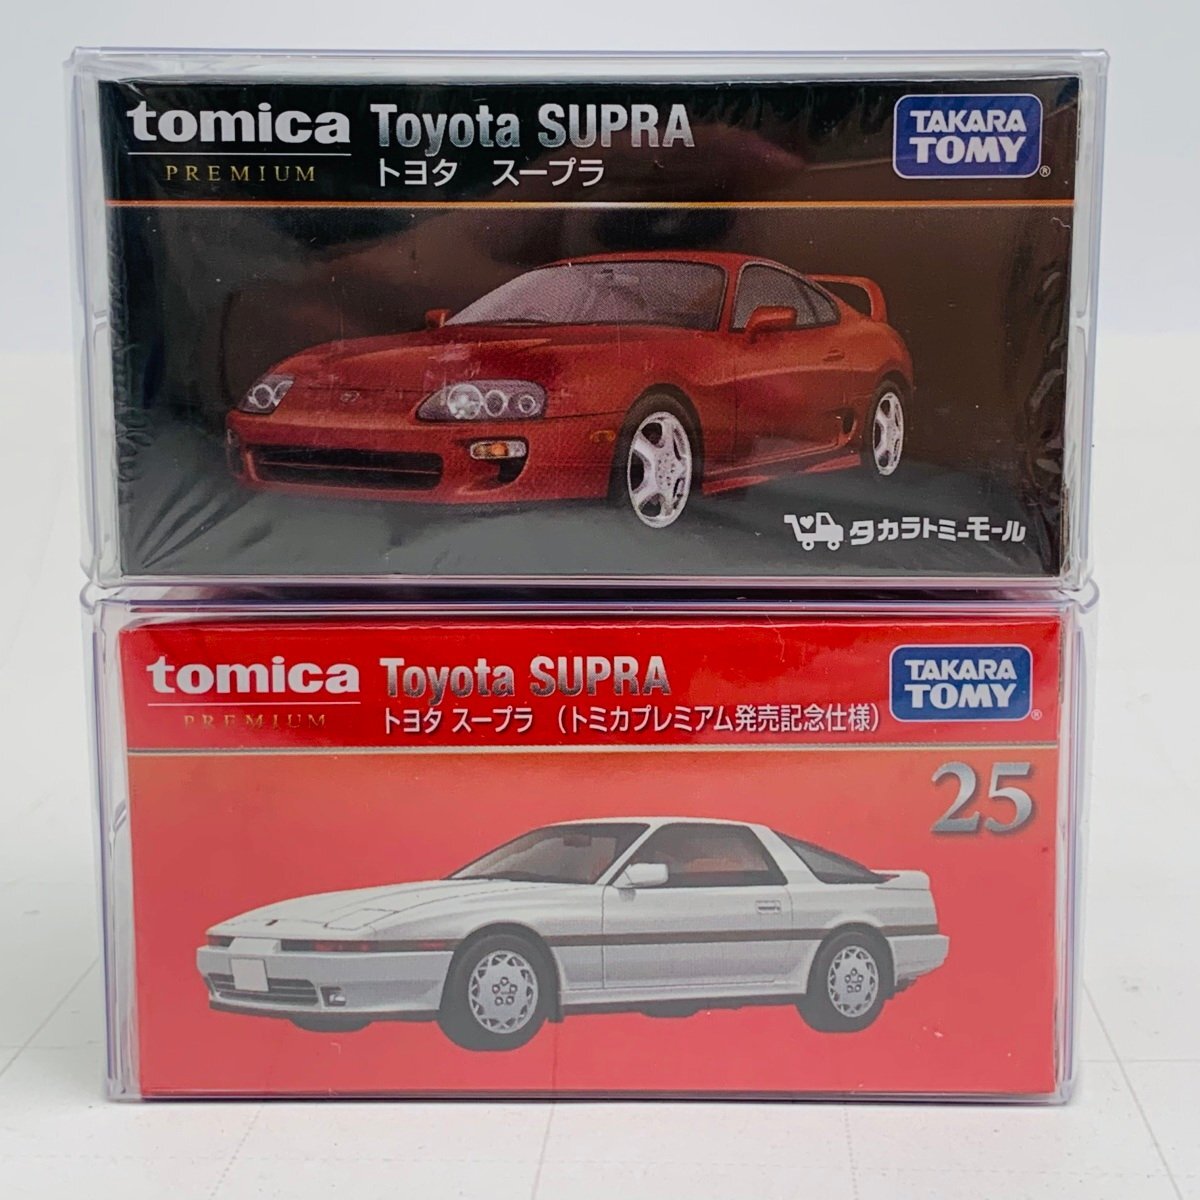 新品未開封 タカラトミー トミカ プレミアム 発売記念仕様 トヨタ スープラ 通常 2種 セットの画像1